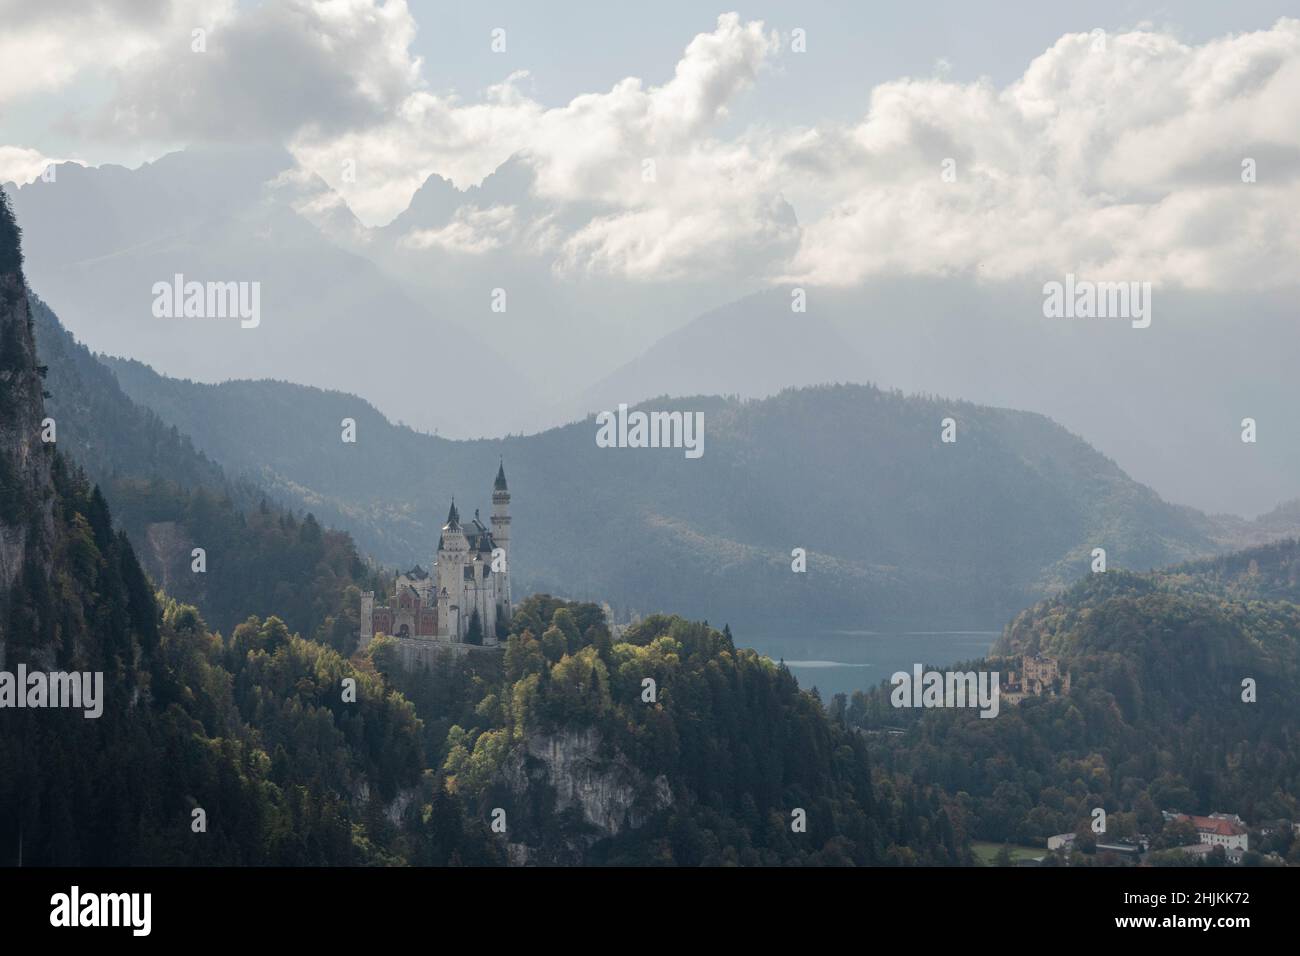 Das malerische Märchenschloß im Ost-Allgäu bei Füssen im Bergpanorama, aufgenommen aus der Tegelbergbahn Stock Photo